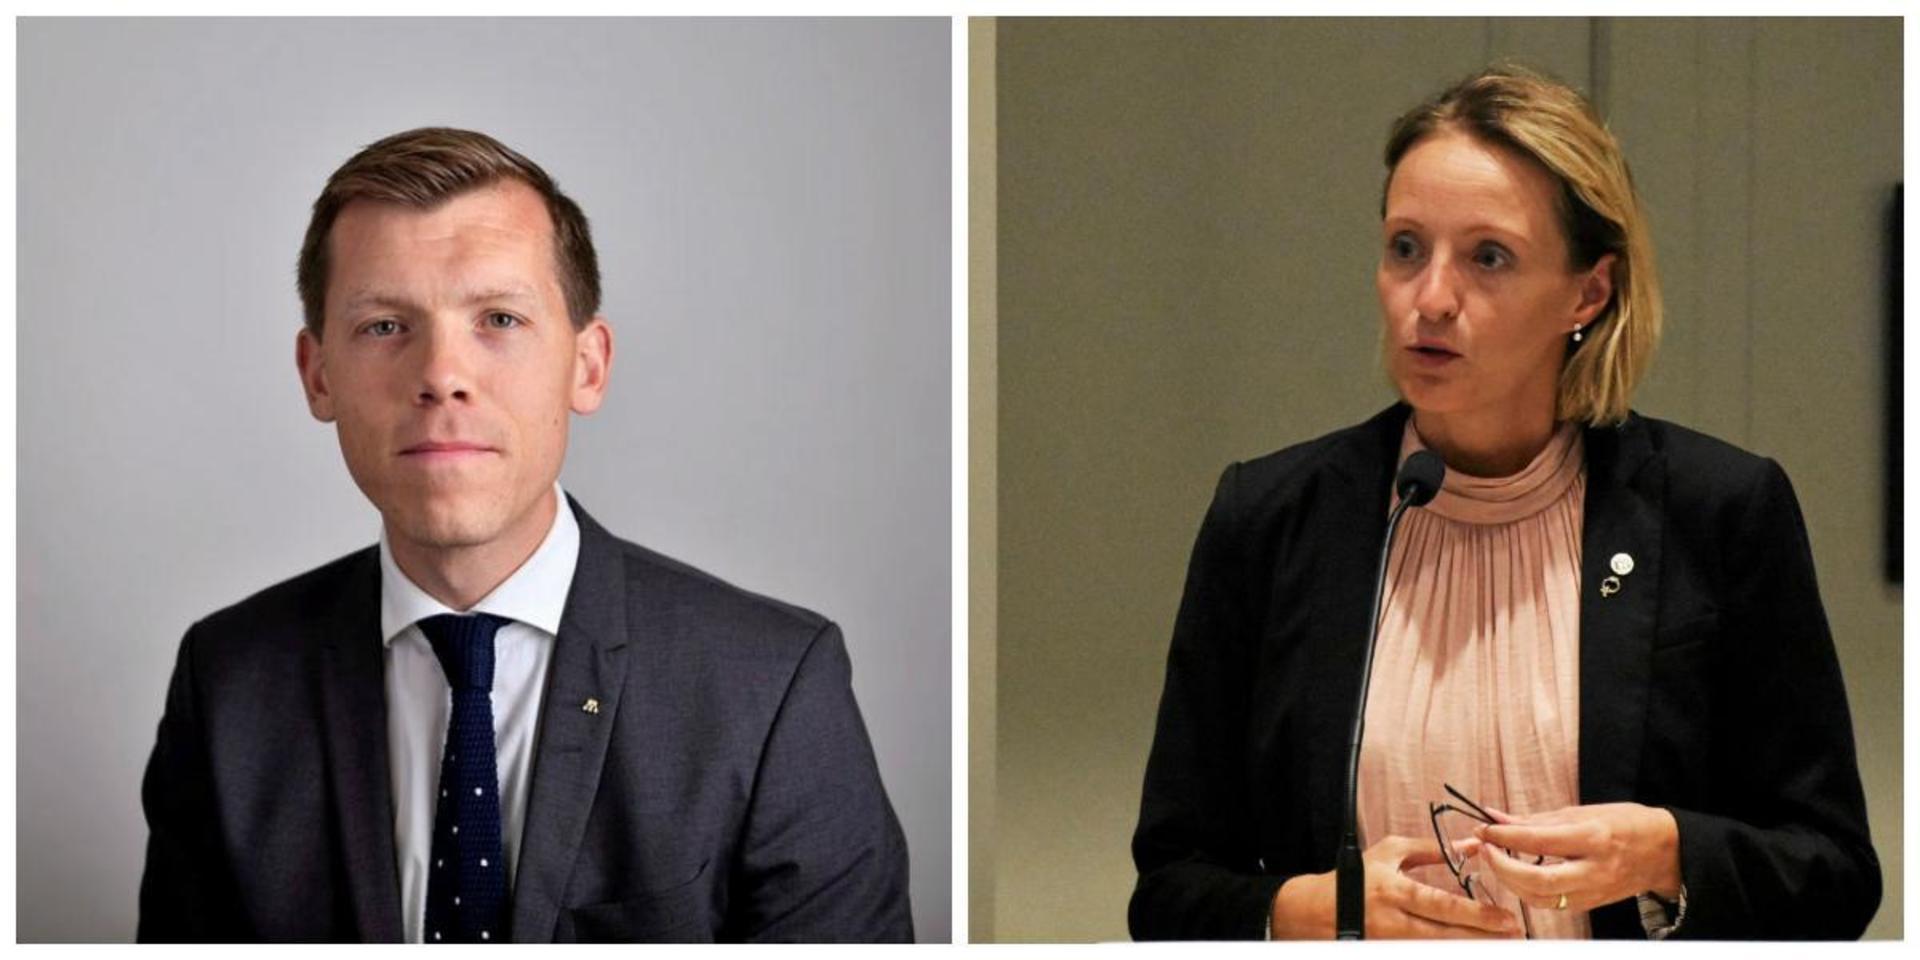 Johan Hultberg (M), riksdagsledamot från Fjällbacka, och Simone Fischer (M), ledamot i socialnämnden, Strömstad, är två av debattörerna.